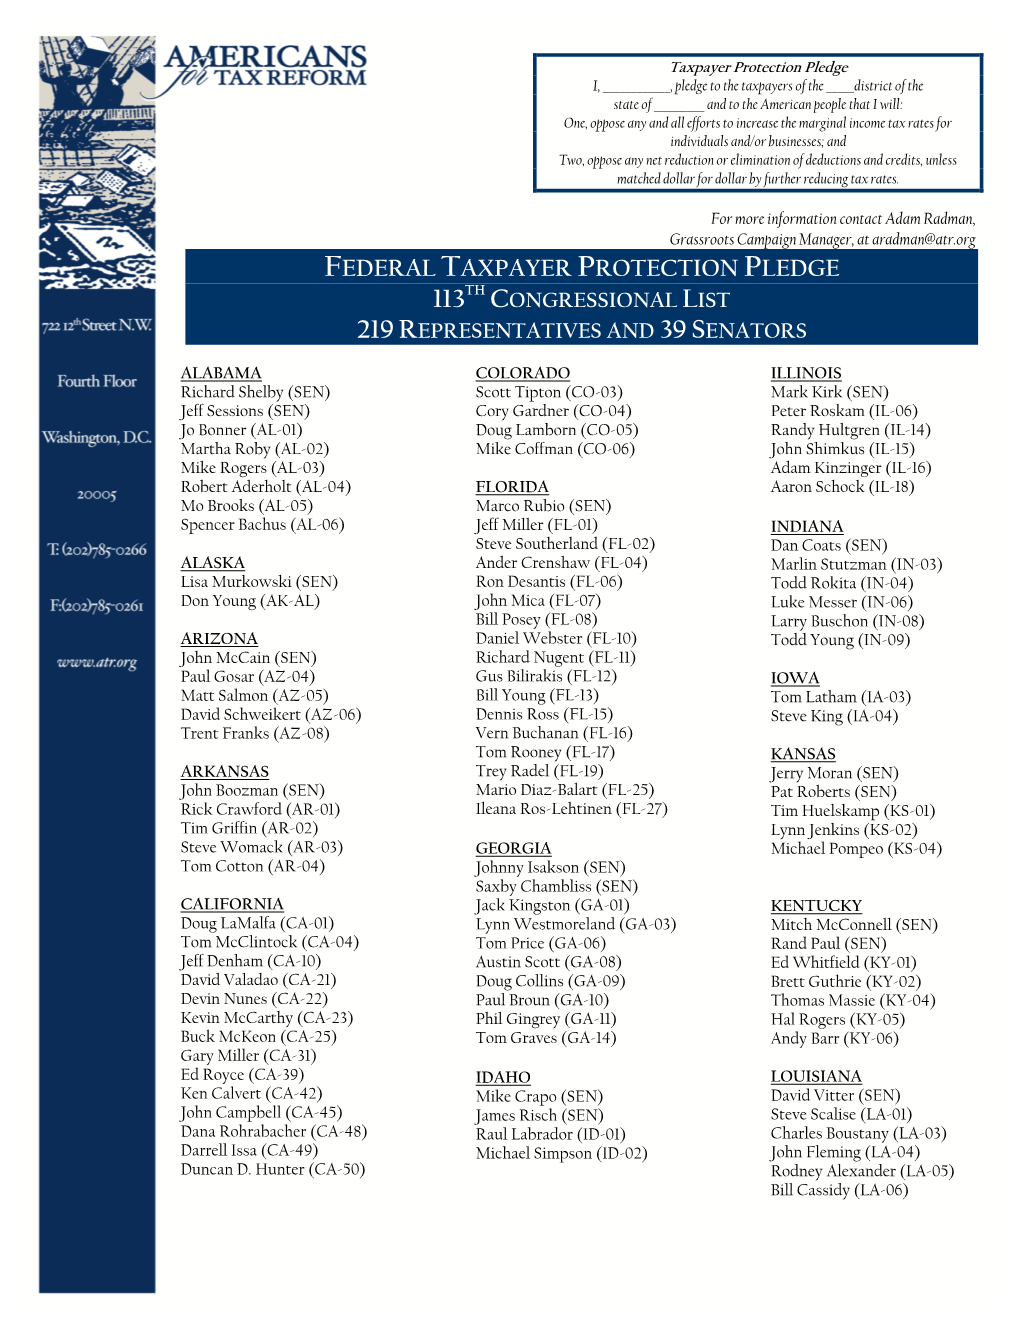 Congressional List 219 Representatives and 39 Senators